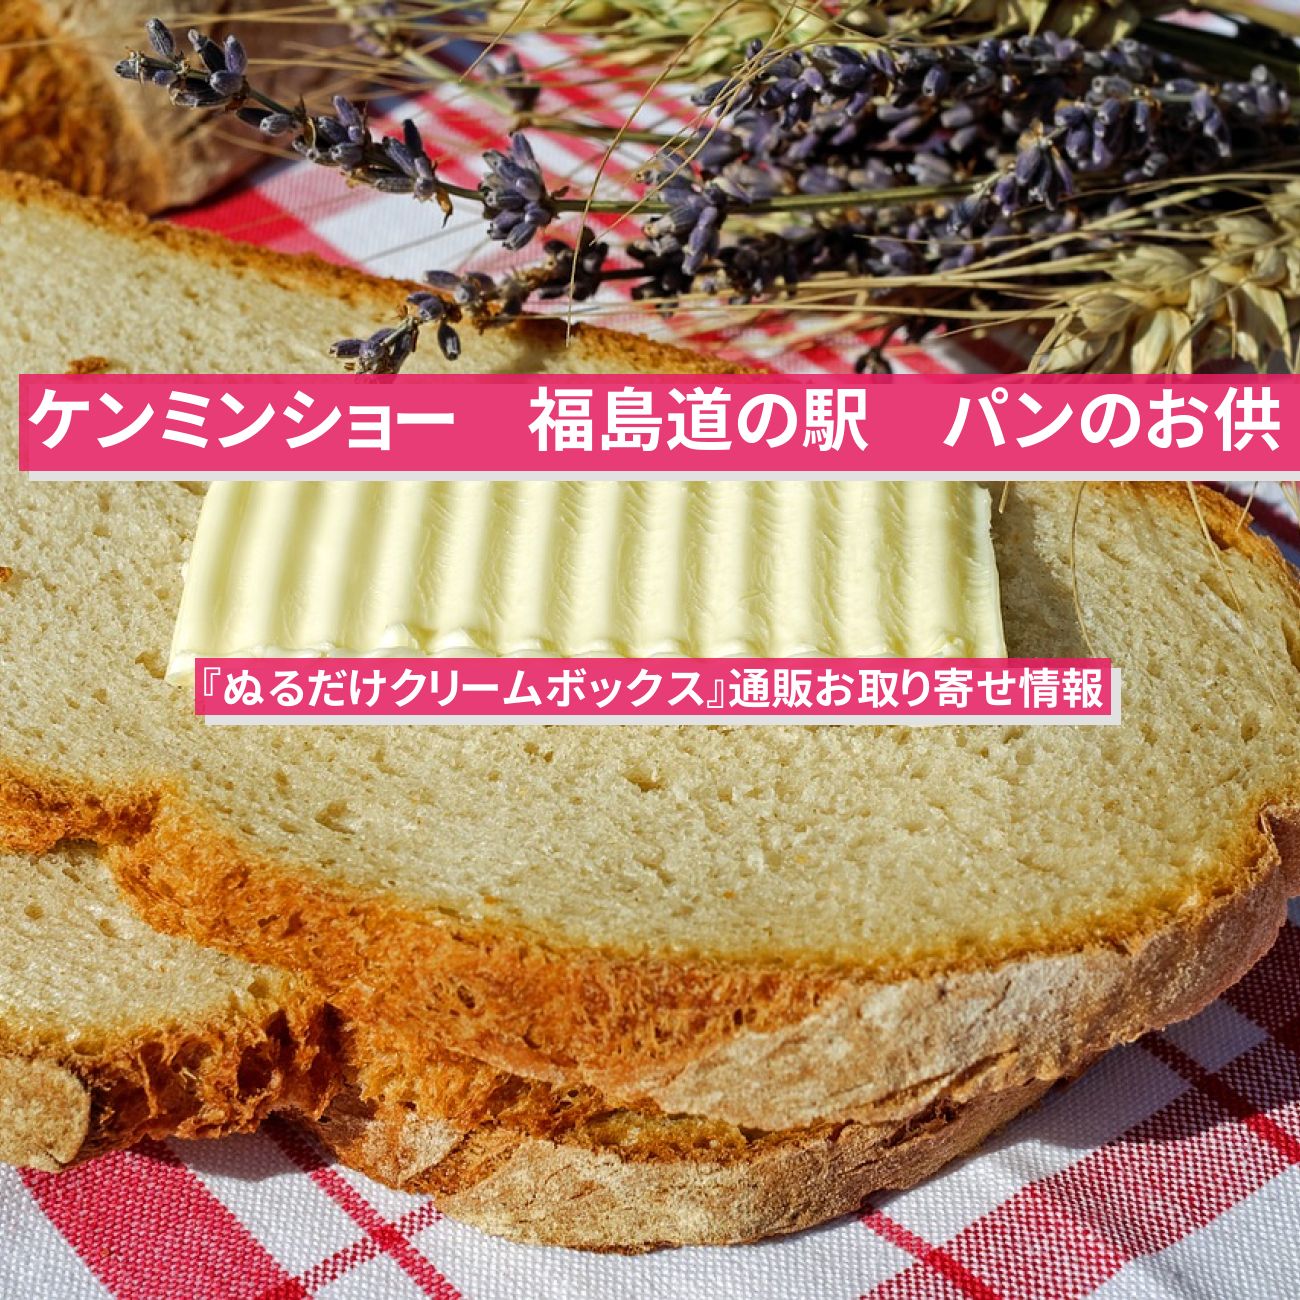 【ケンミンショー】『ぬるだけクリームボックス』福島のパンのお供の通販お取り寄せ情報〔秘密のケンミンSHOW〕